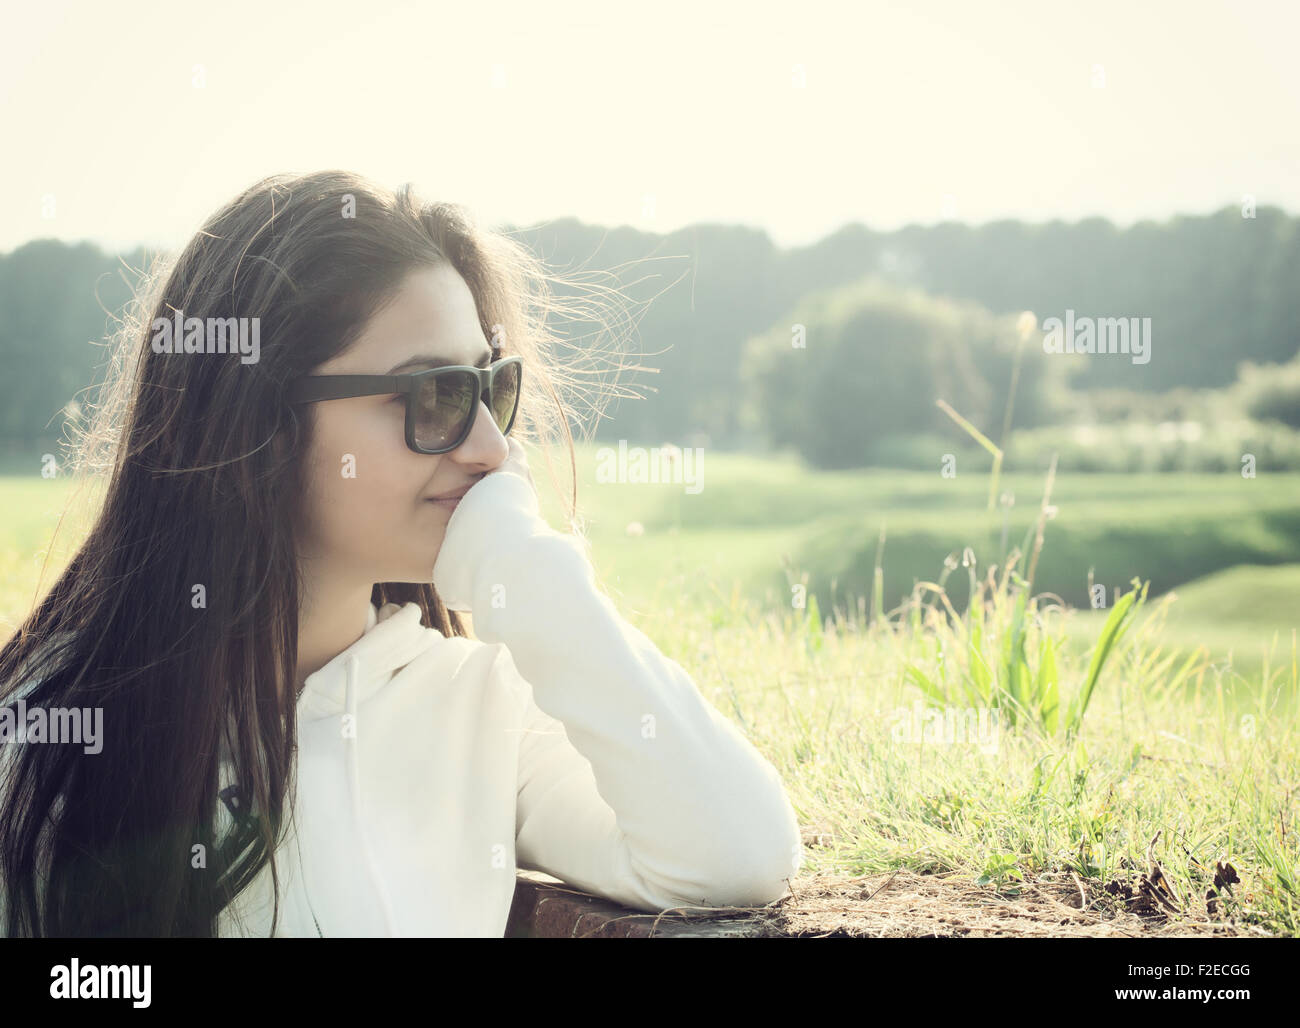 Porträt eines Teenagers mit Sonnenbrille bei Gegenlicht fotografiert Stockfoto